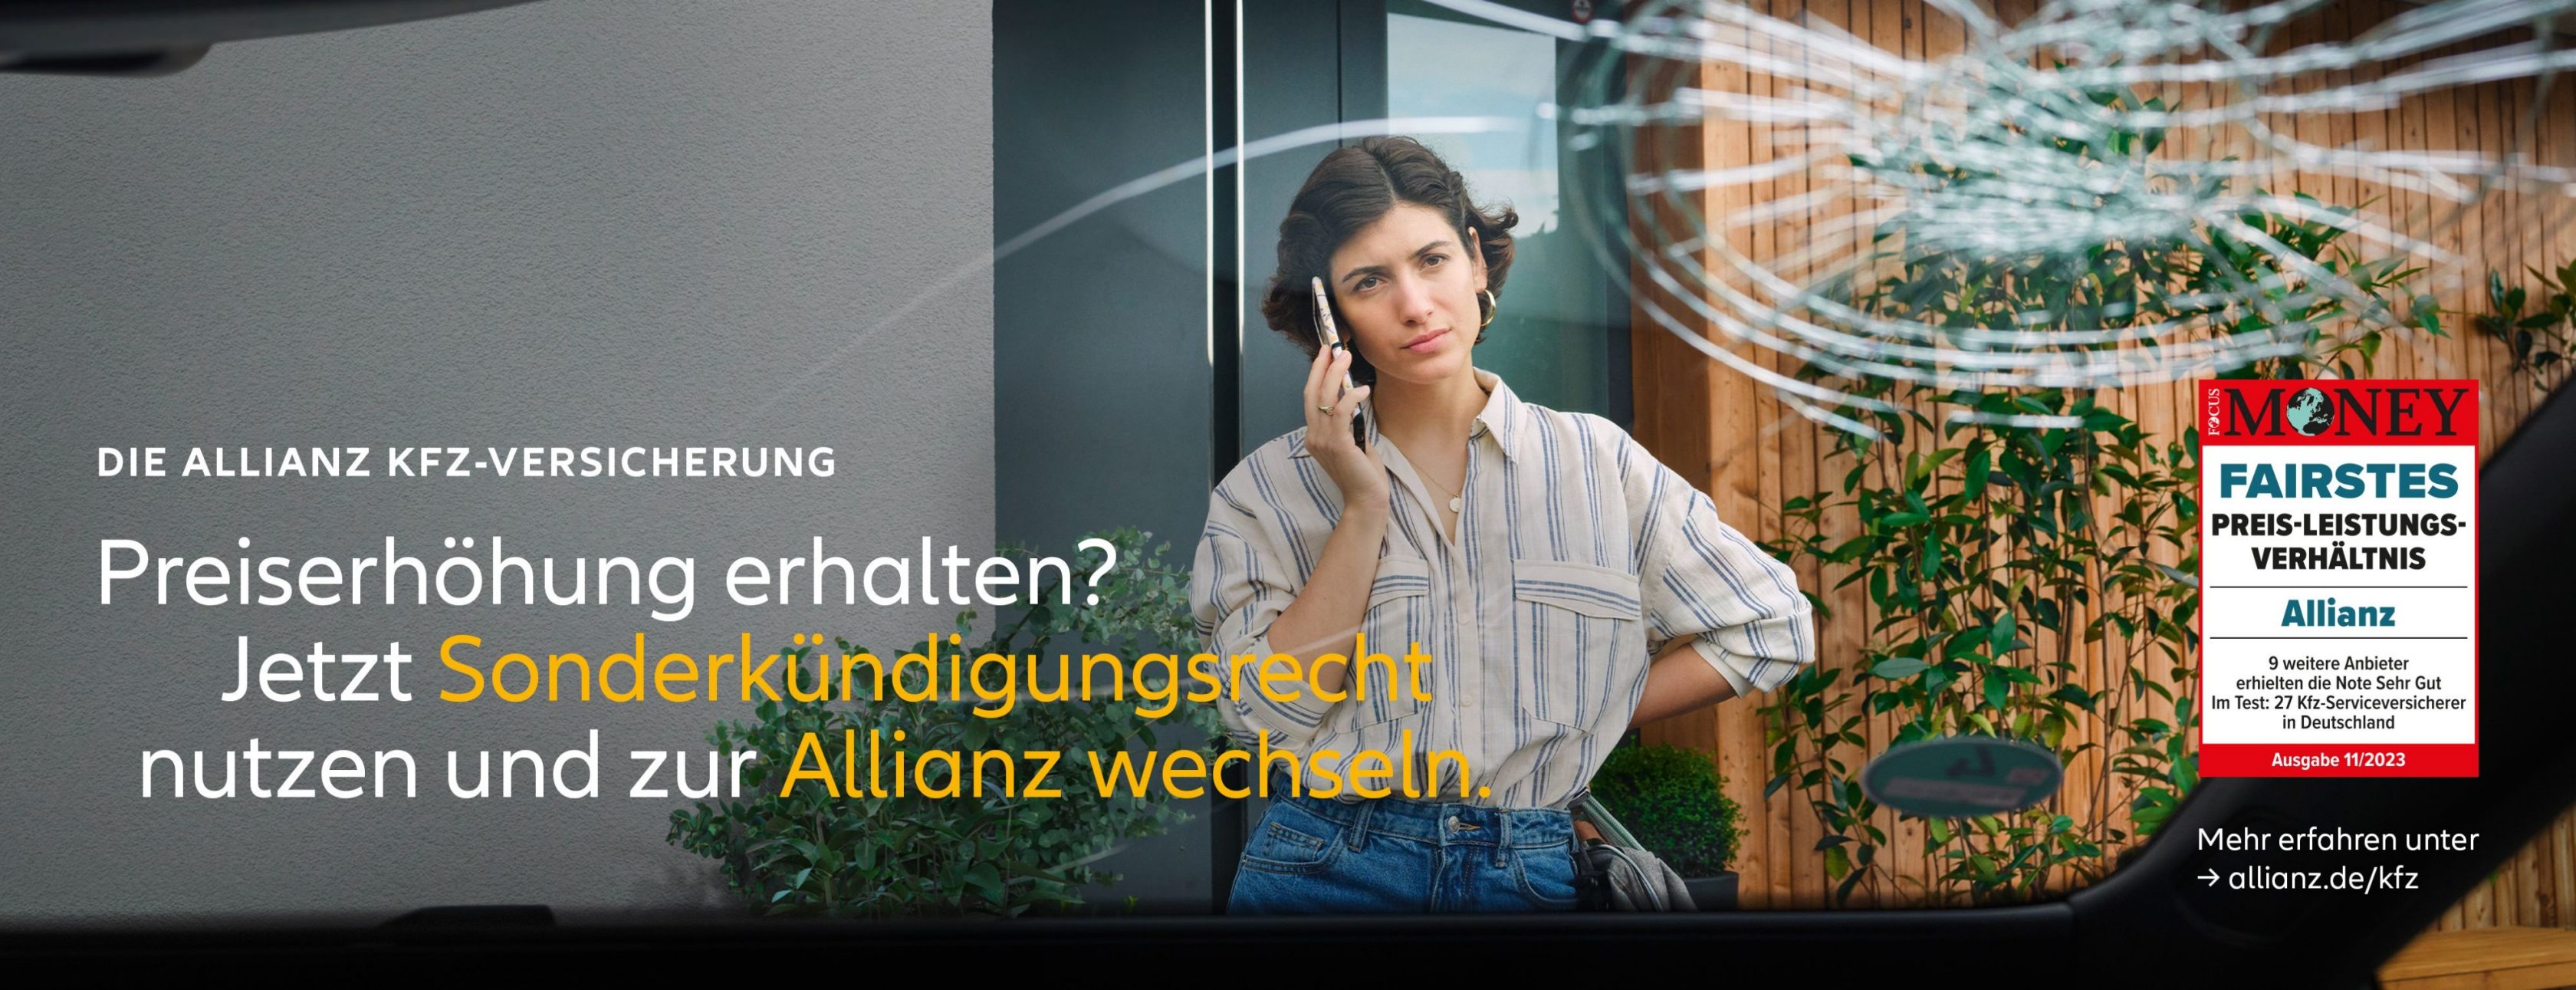 Allianz Versicherung Kim Sebastian Wendt Bremen - KFZ-Versicherung Sonderkündigung